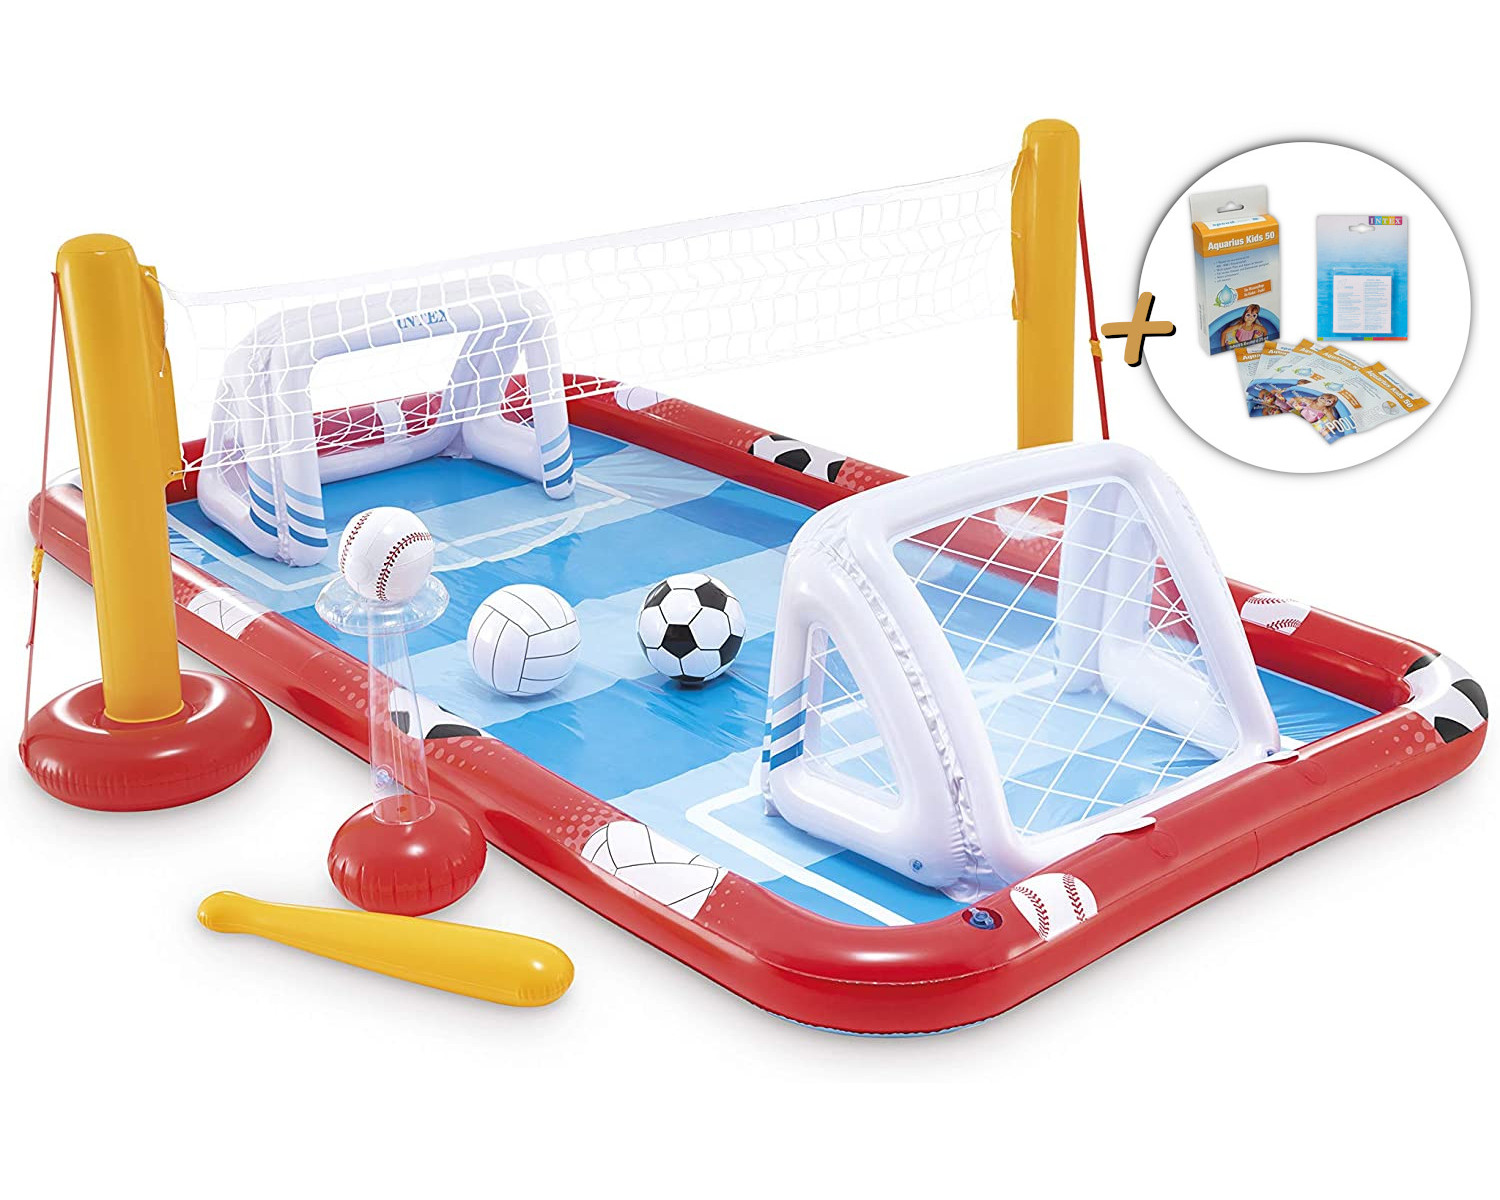 INTEX Playcenter - Planschbecken, Wasserpflege (325x267x102cm) + Action Playcenter, & Sports Reparaturflicken mehrfarbig